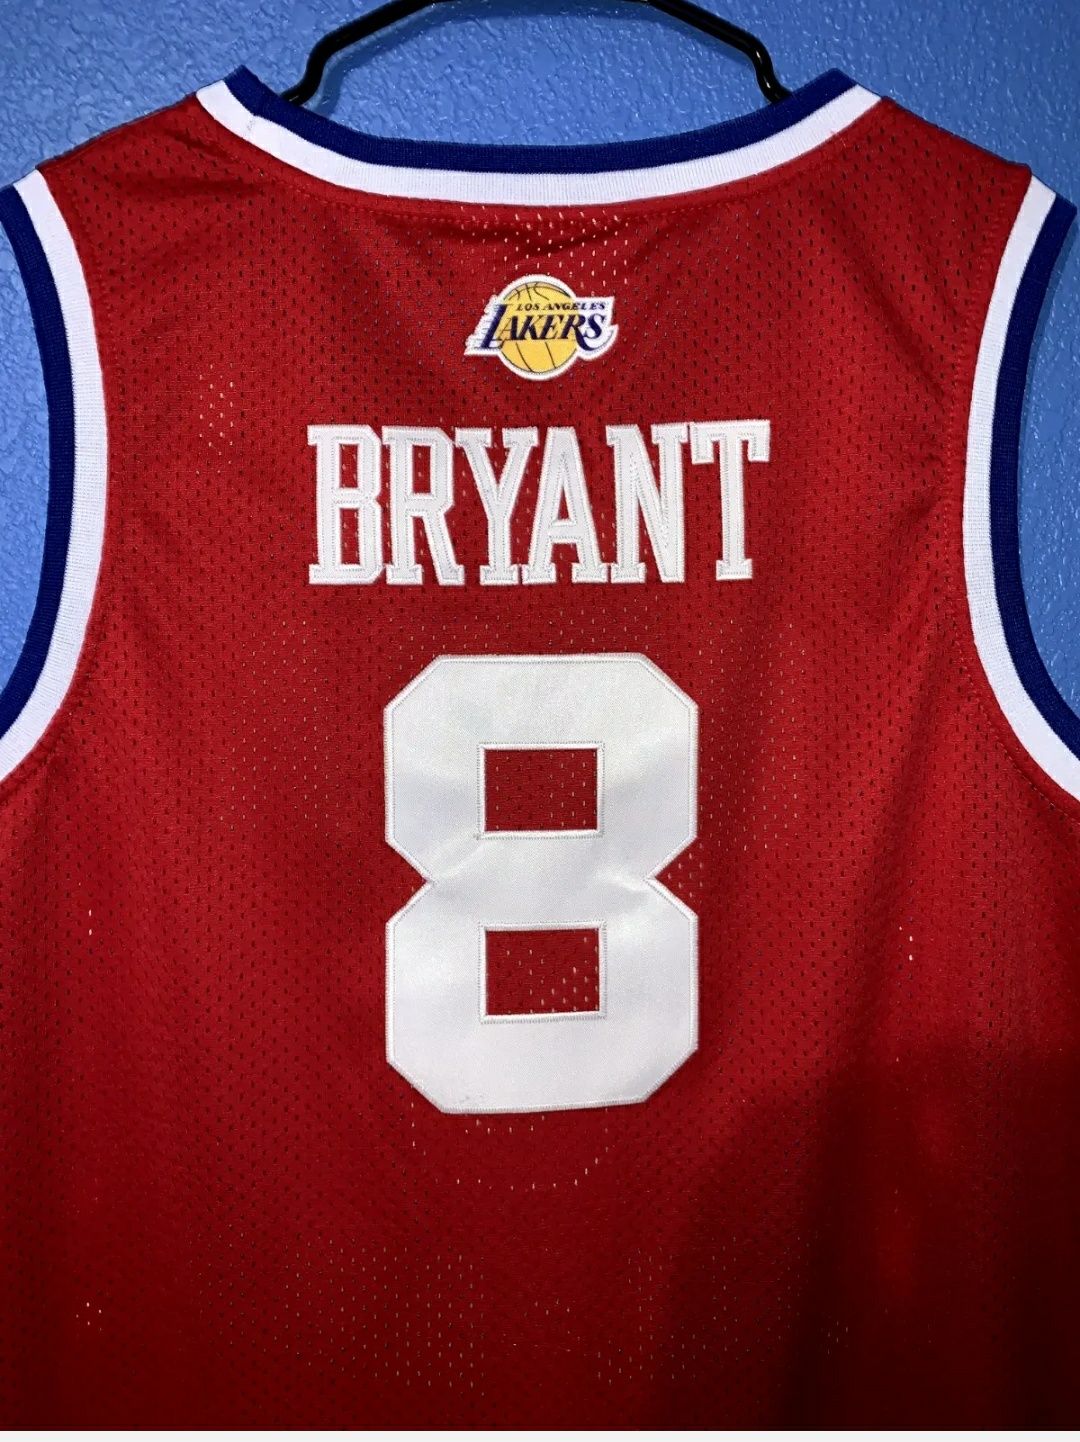 NBA All-star game Kobe Bryant